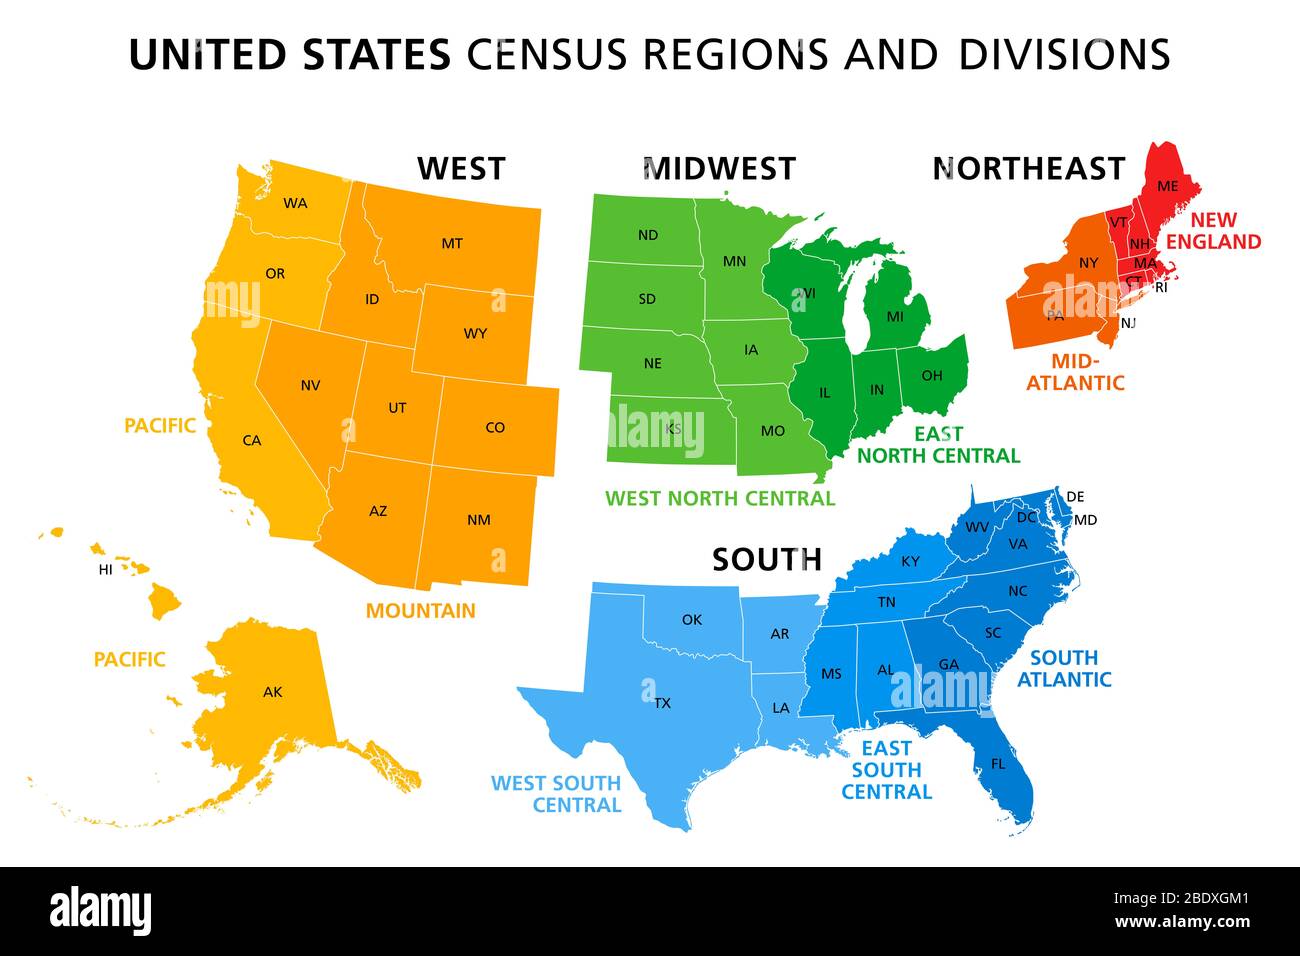 Mappa degli Stati Uniti diviso in regioni e divisioni censimento. Definizione di regione, ampiamente utilizzata per la raccolta e l'analisi dei dati. Foto Stock